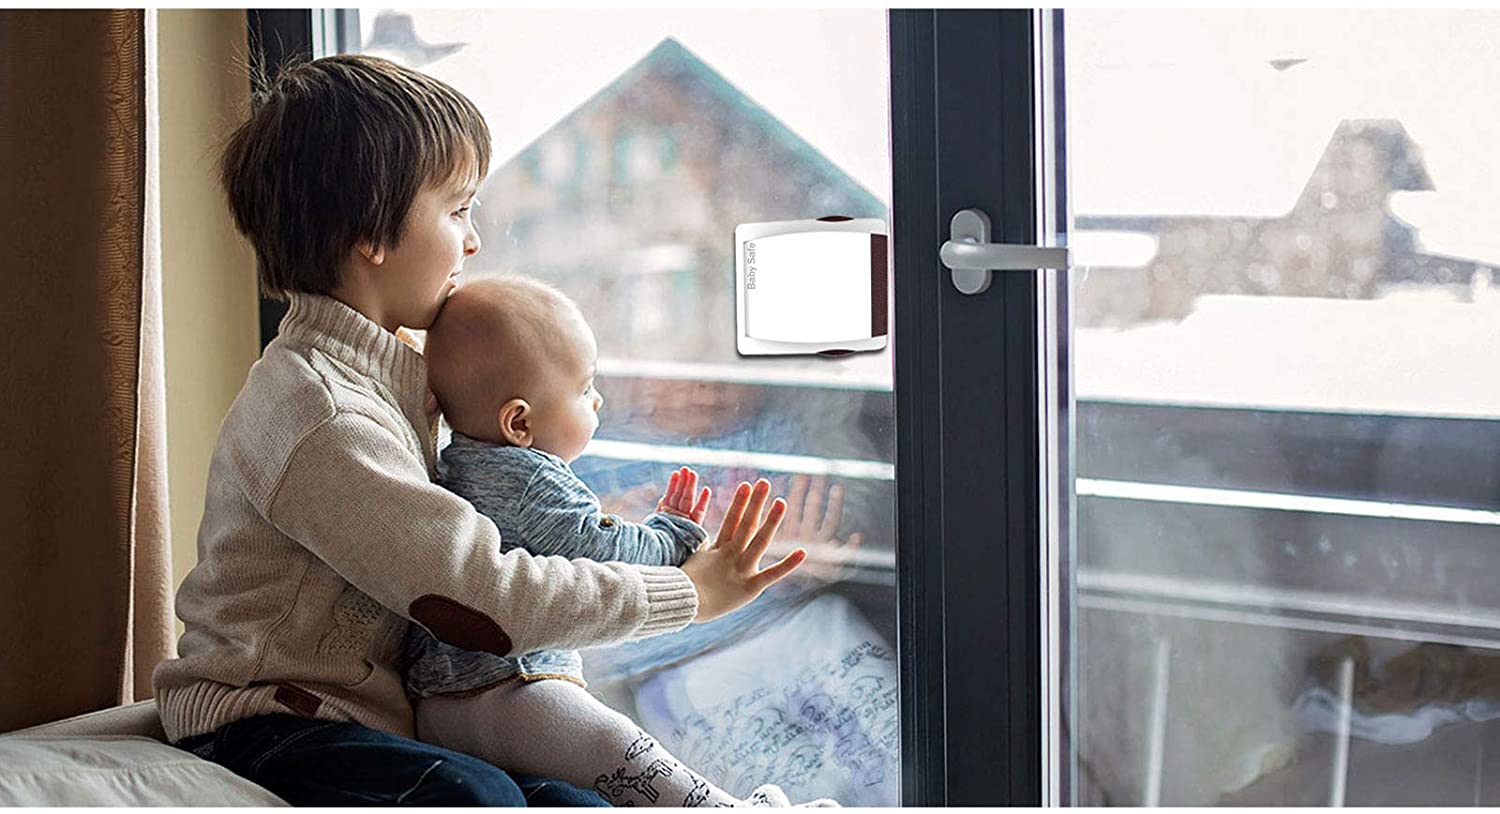 2 Pack Baby Proof Security Locks for Sliding Glass Door Window Patio Closet Cabinet Door - e4cents